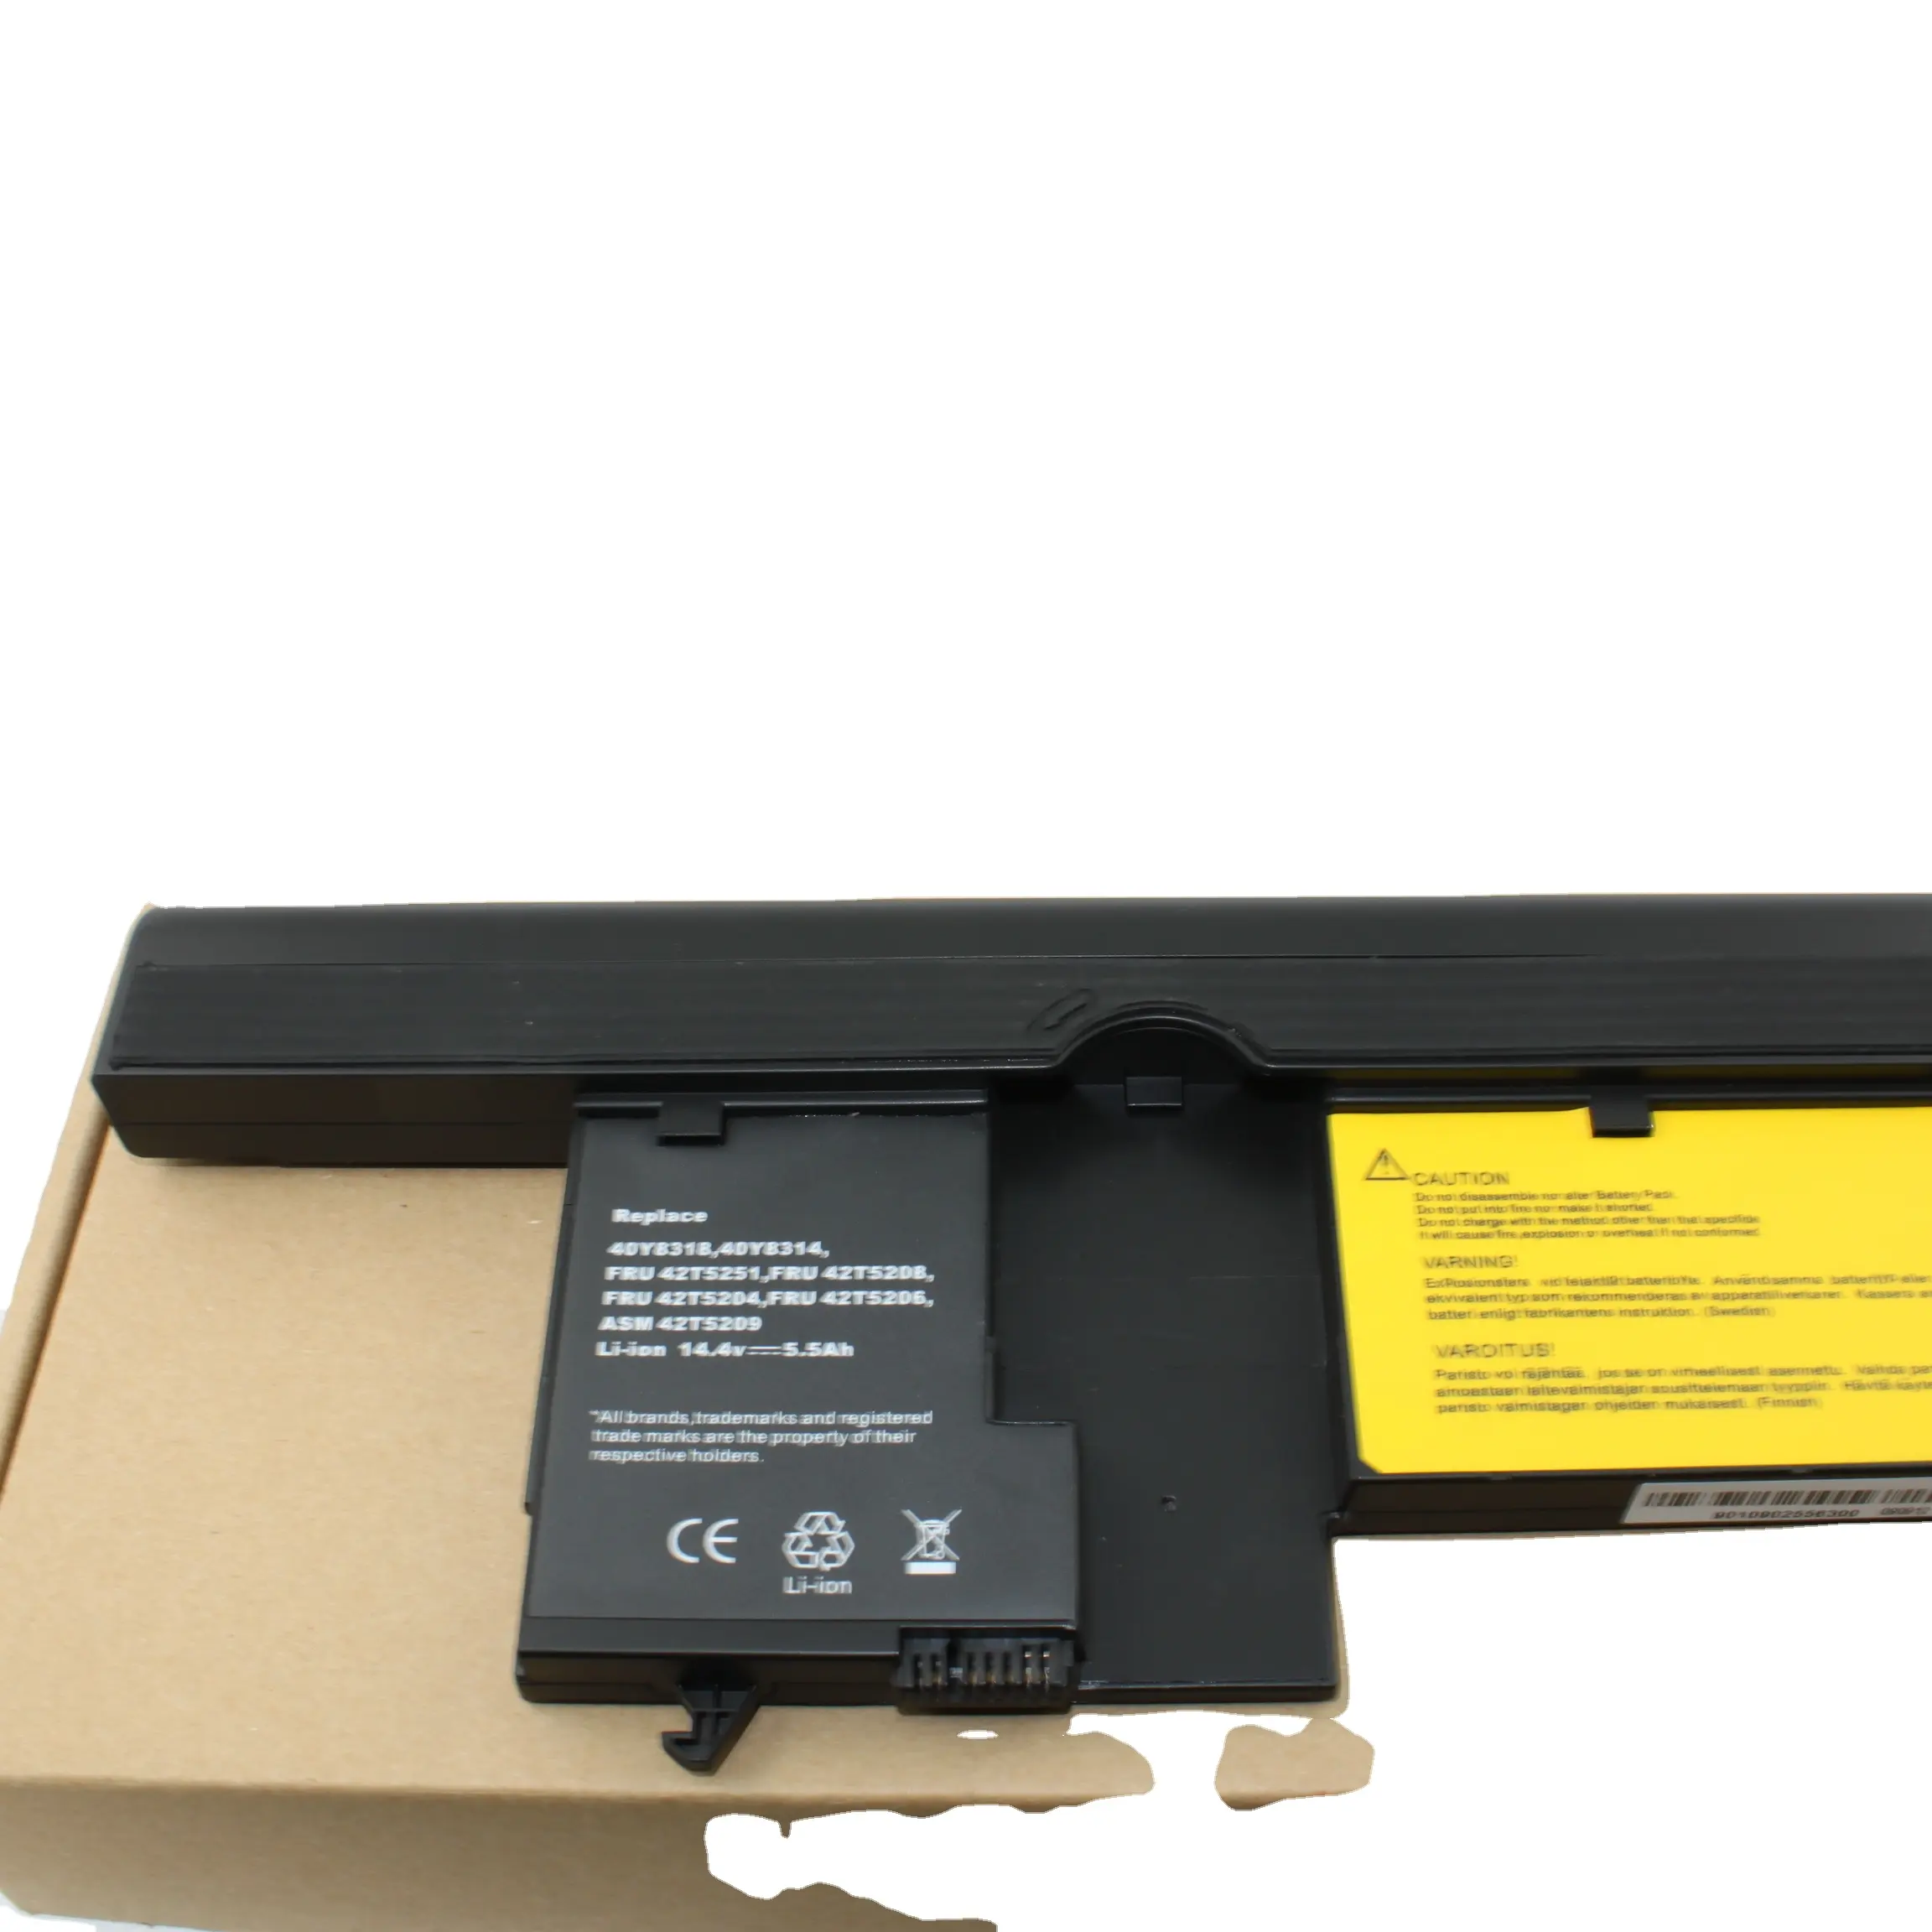 Carregador de bateria externo para Lenovo Thinkpad X61t X60t 42t5251 40y8314 bateria